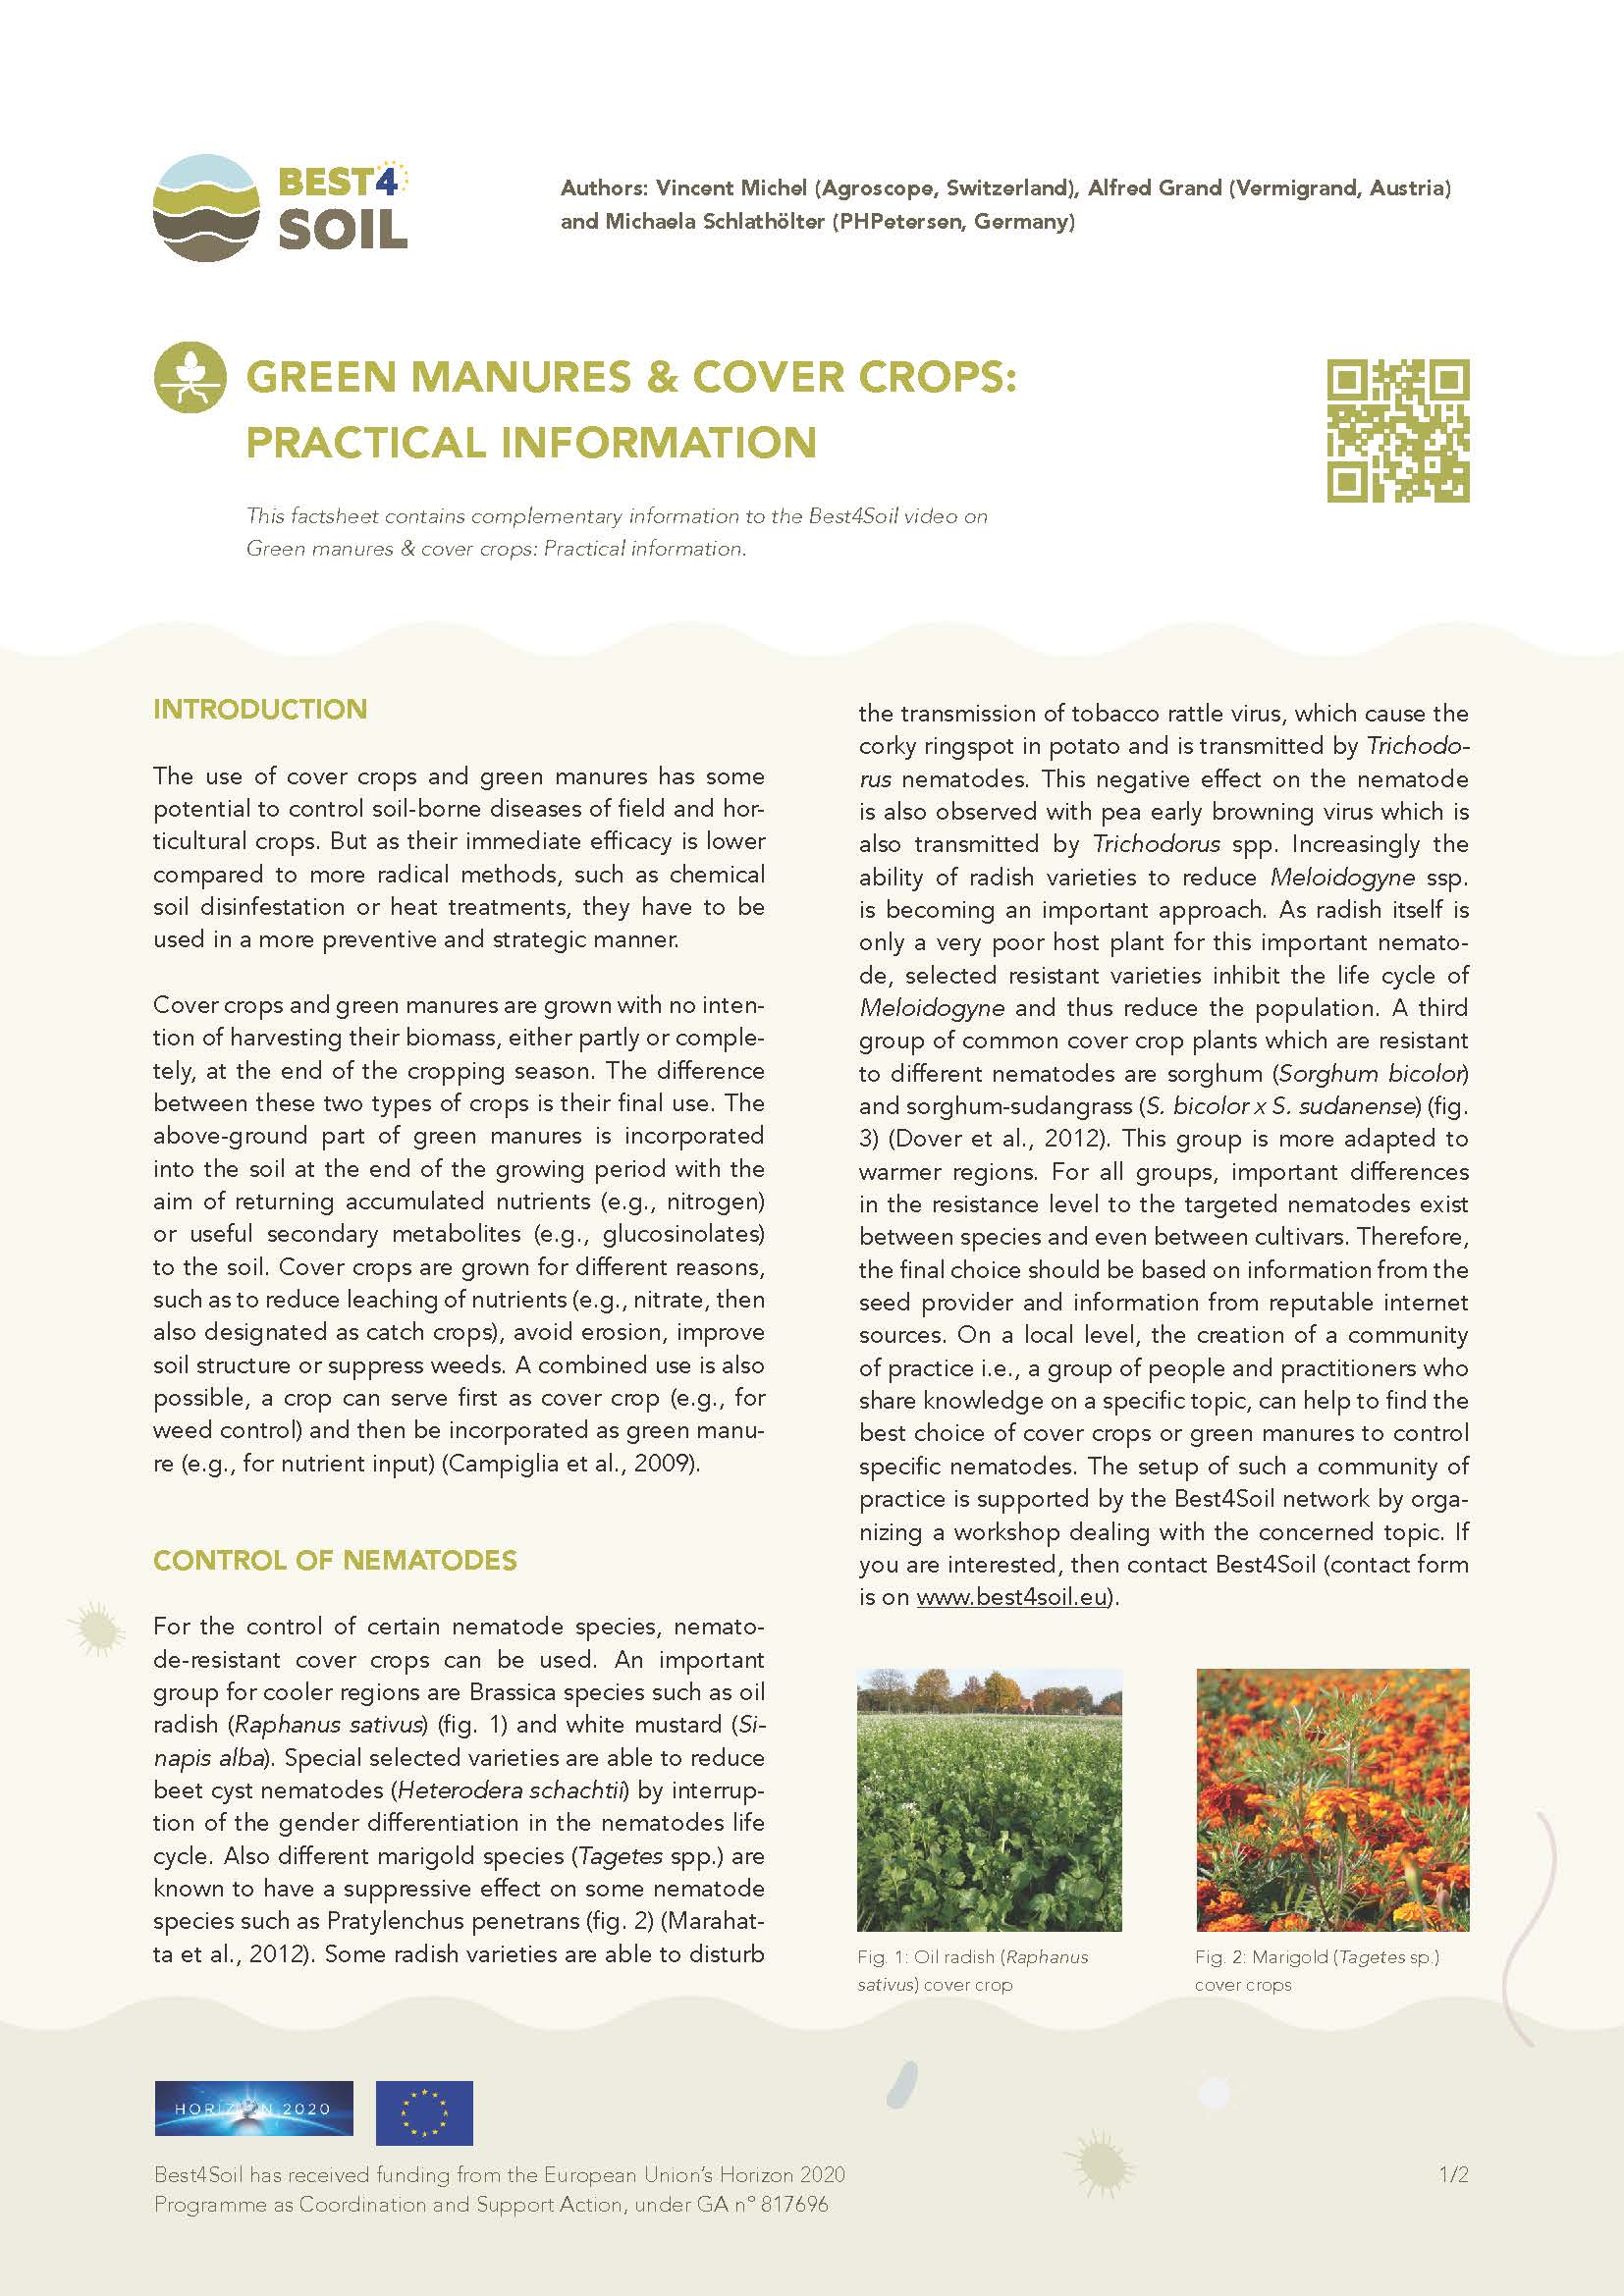 Abonos verdes y cultivos de cobertura: información práctica (Ficha informativa de Best4Soil)